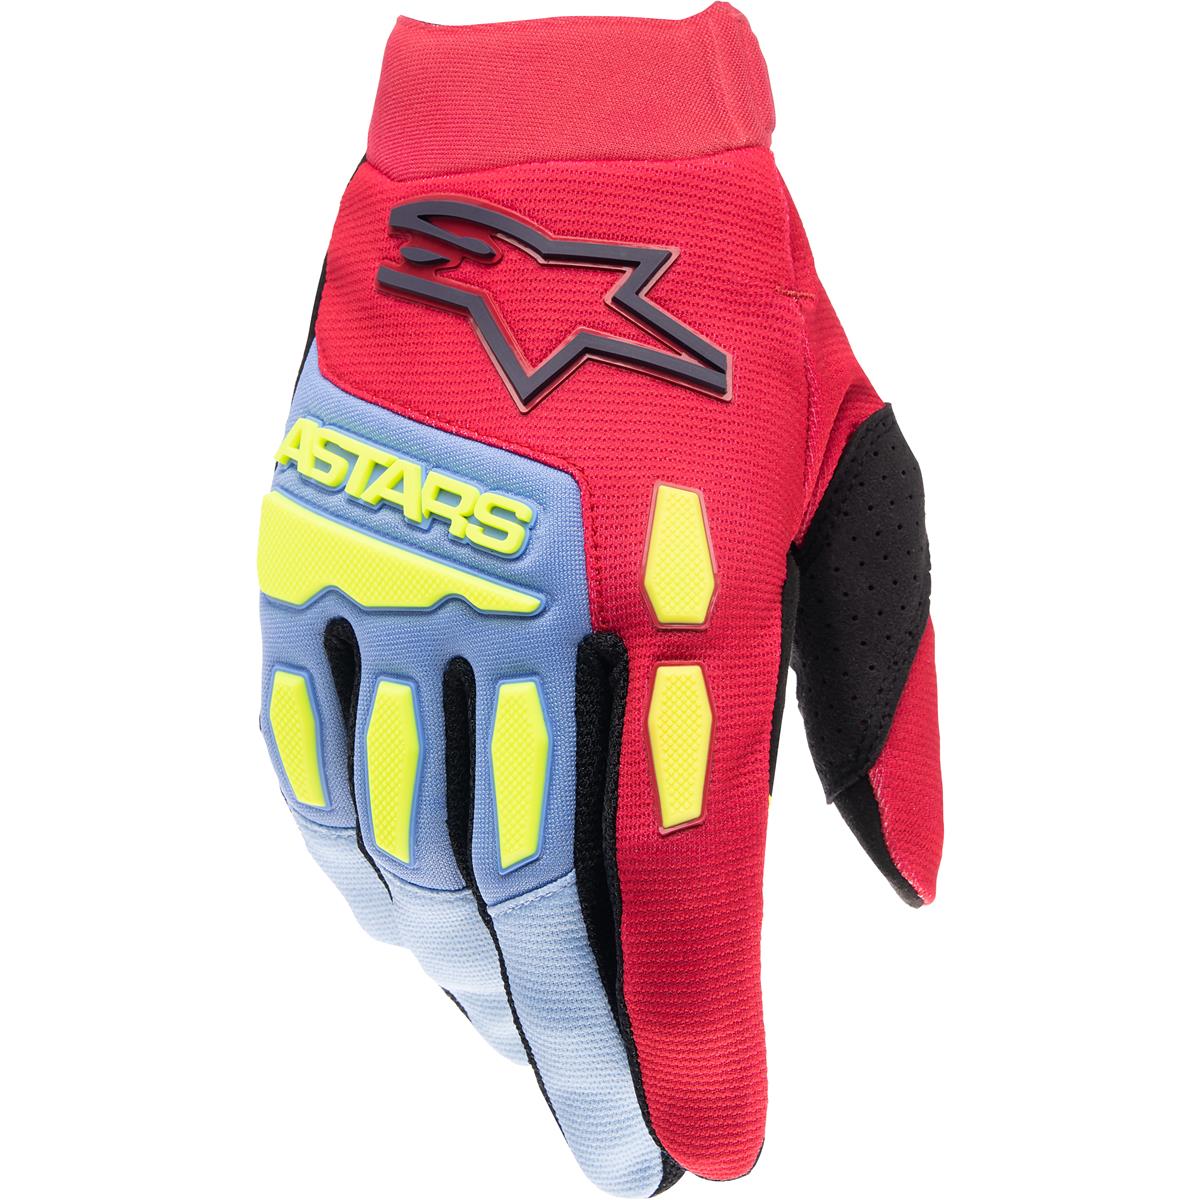 Alpinestars Gloves Full Bore Light Blue/Red Berry/Black